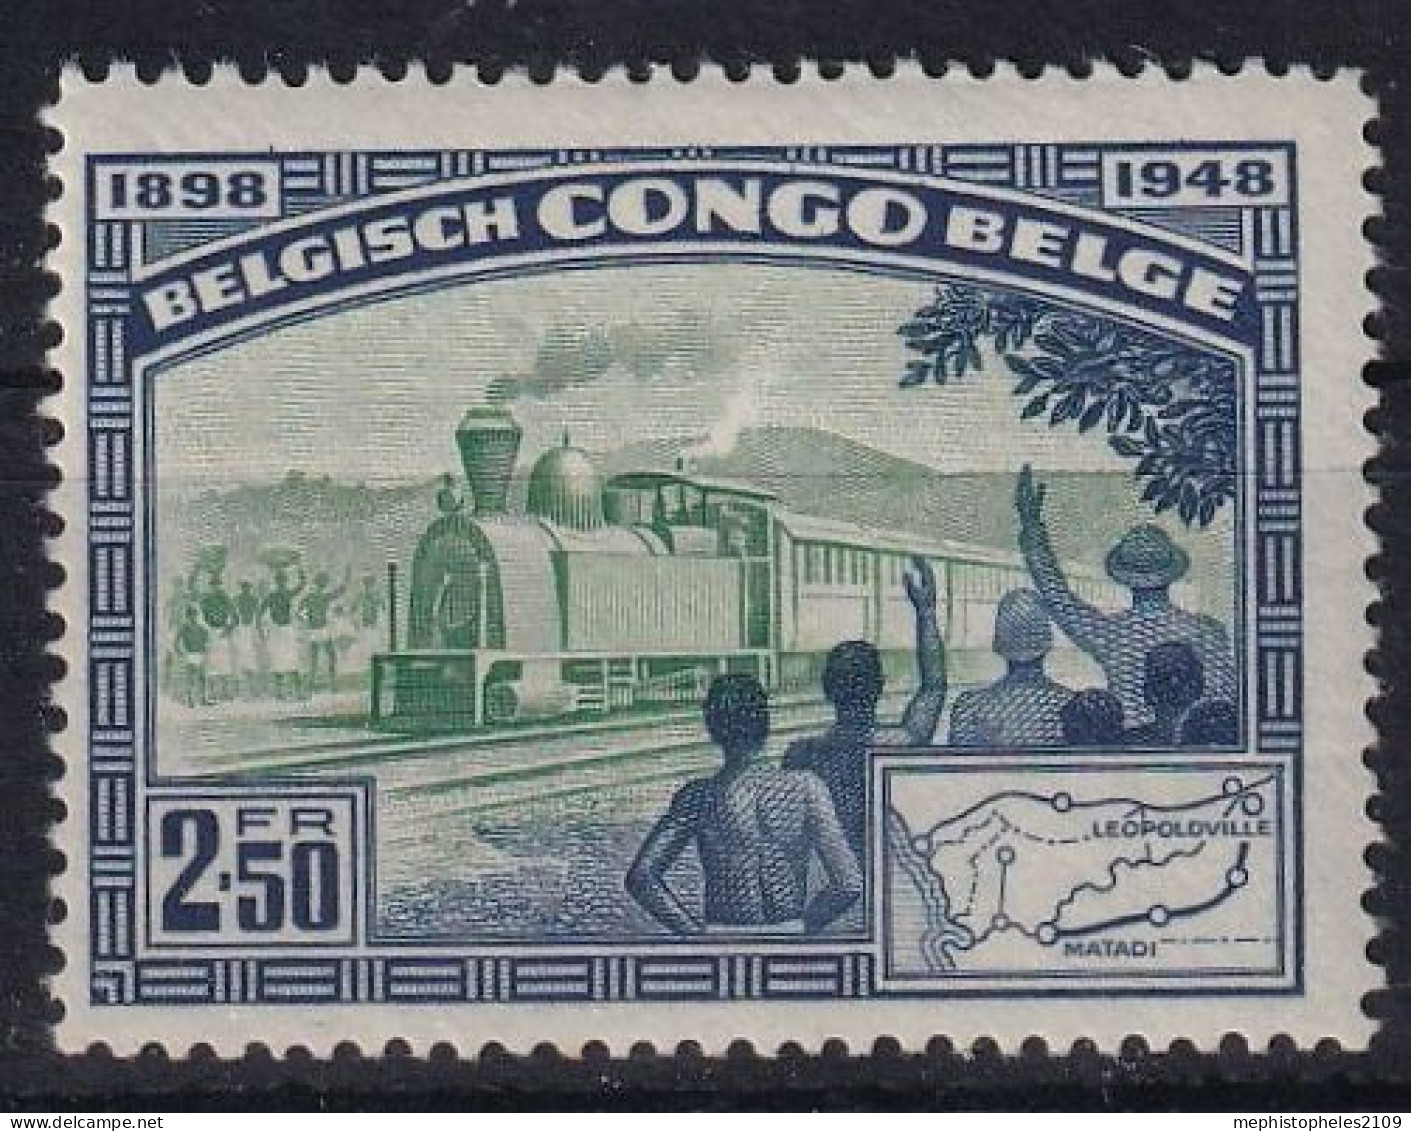 BELGISCH-CONGO 1948 - MLH - Mi 289 - Ongebruikt